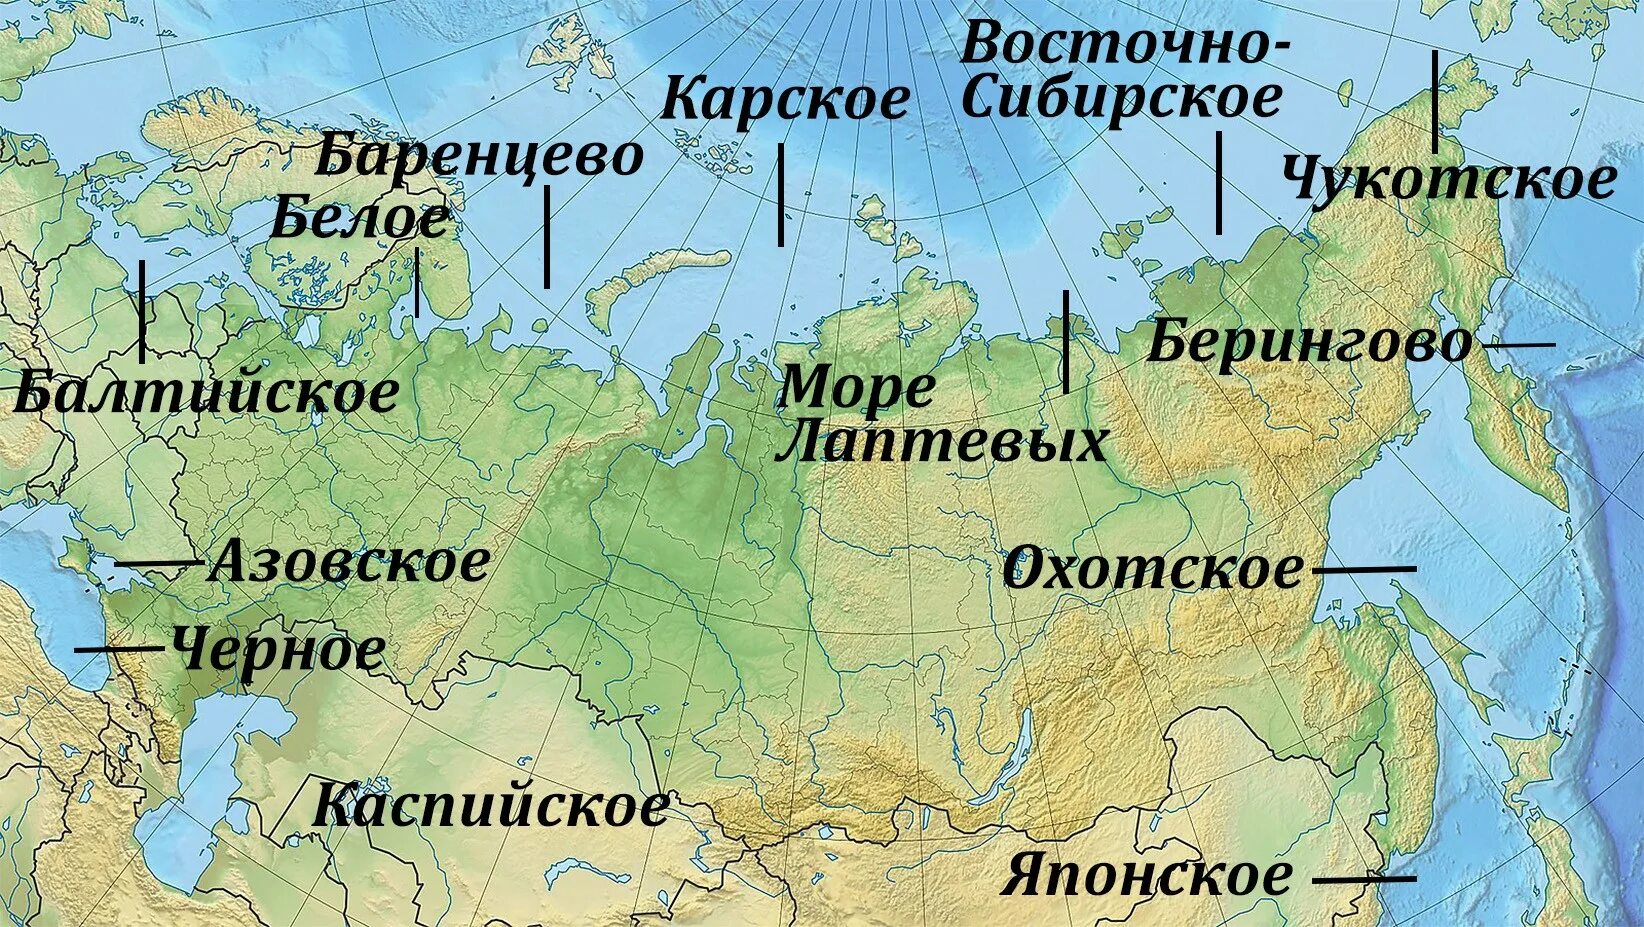 Моря и океаны омывающие Россию на карте. Моря омывающие Россию. Моря России на карте. Моря омывающие Россию на карте. Моря океаны рф